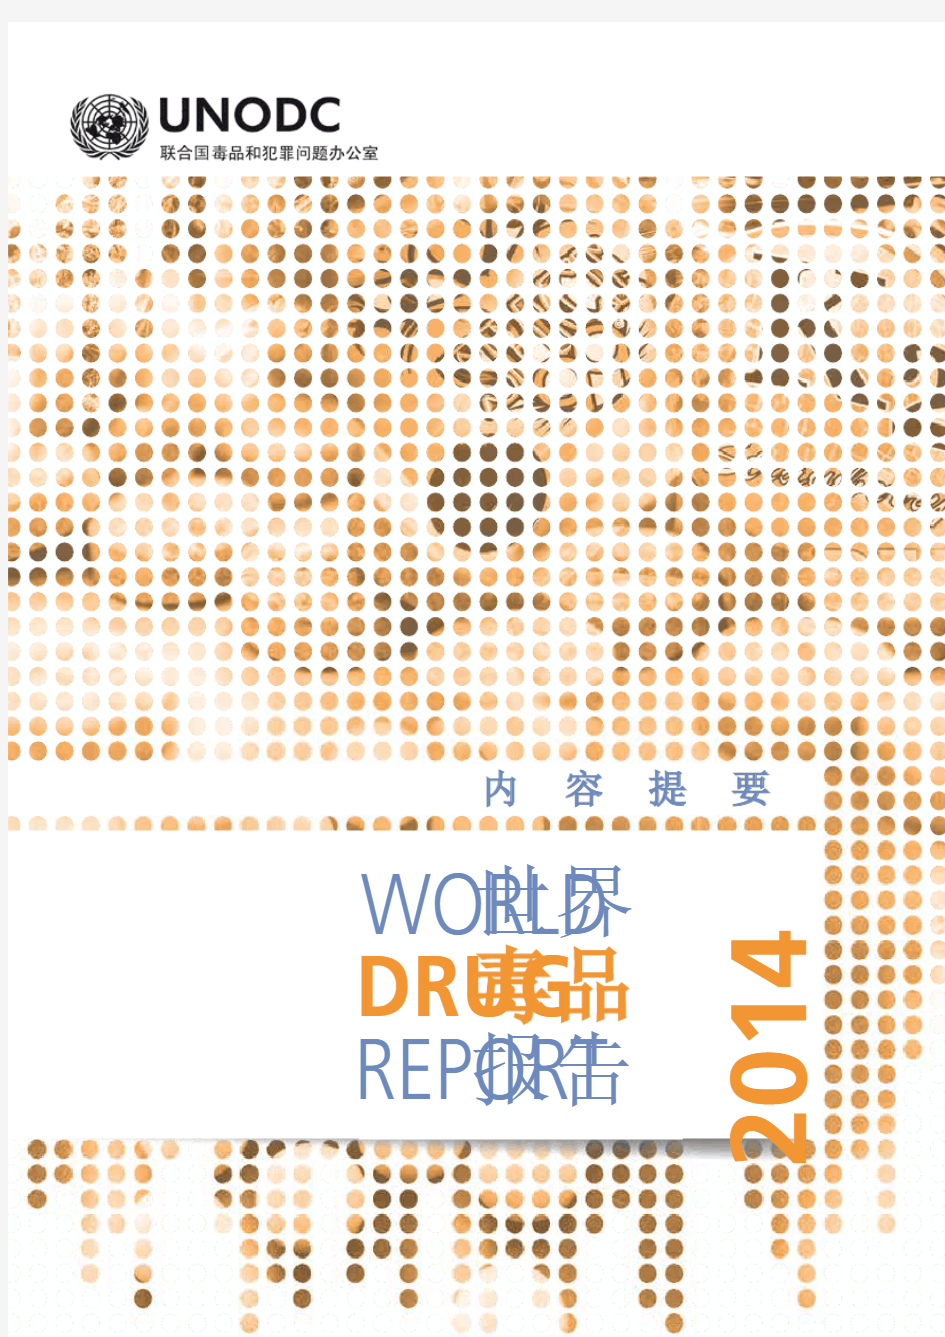 2014年世界毒品报告(中文摘要)